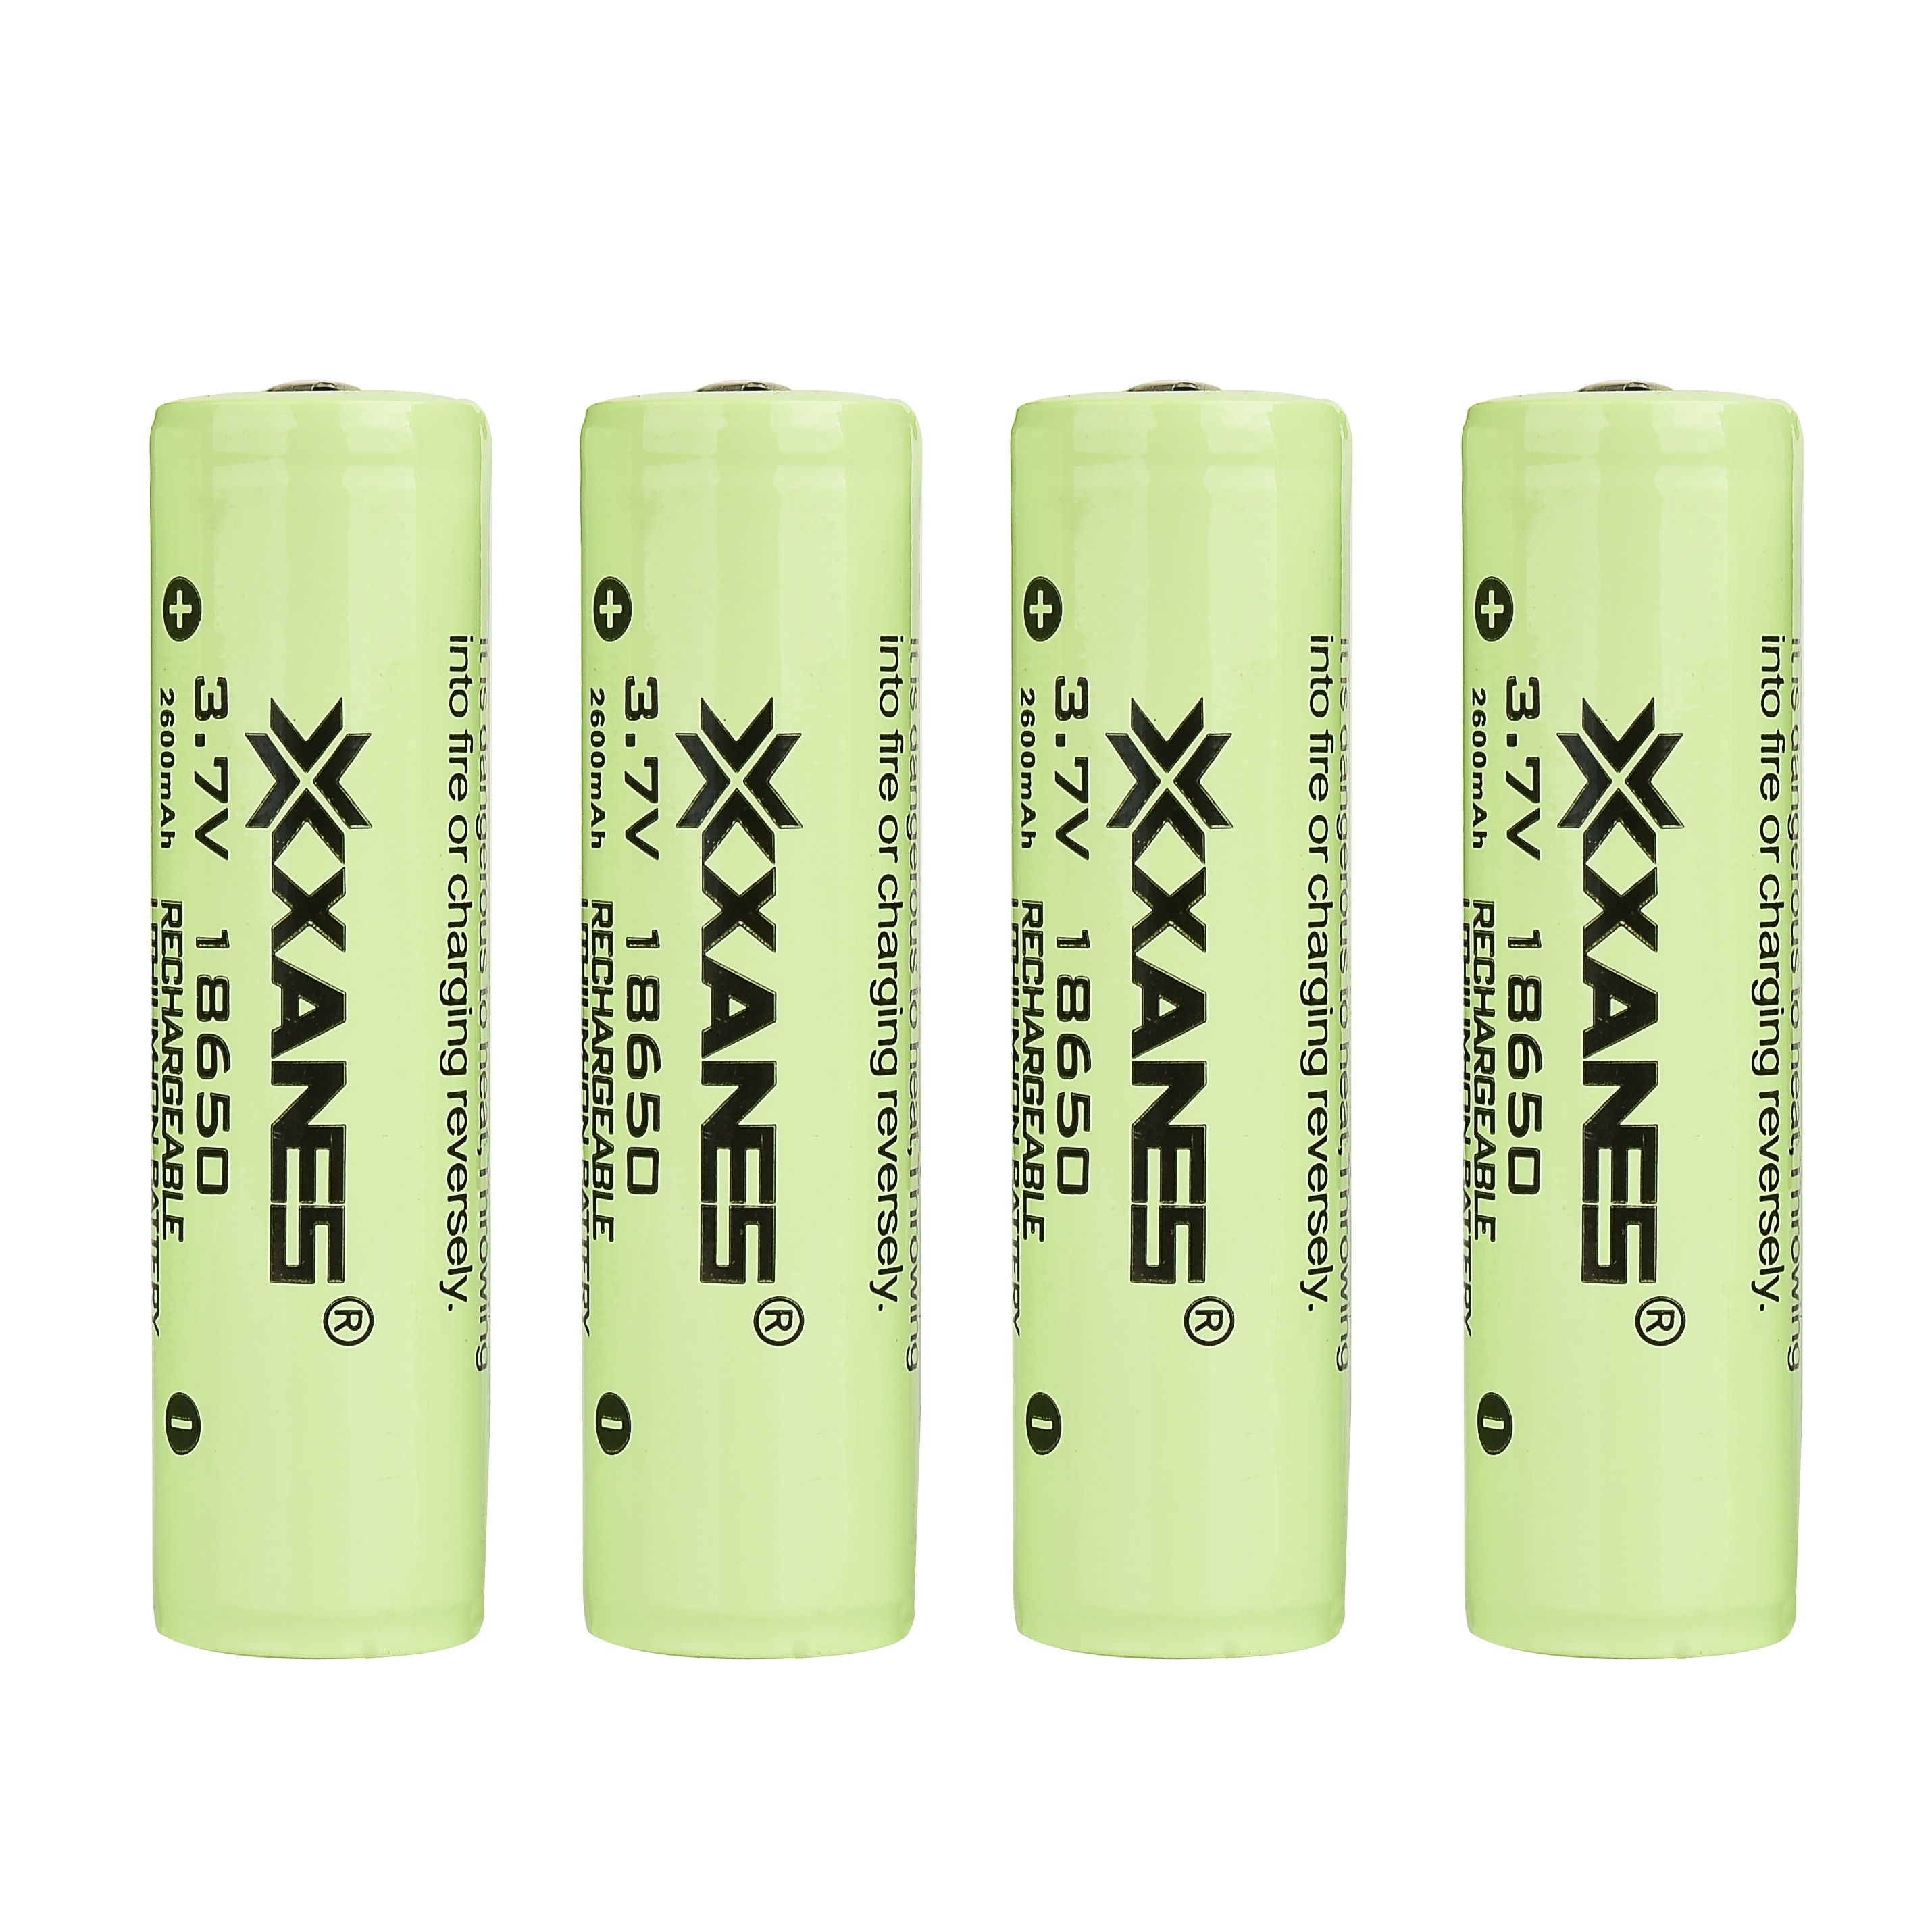 4pcs-XANES-37V-2600mAh-Protected-Rechargeable-18650-Li-ion-Battery-1282696